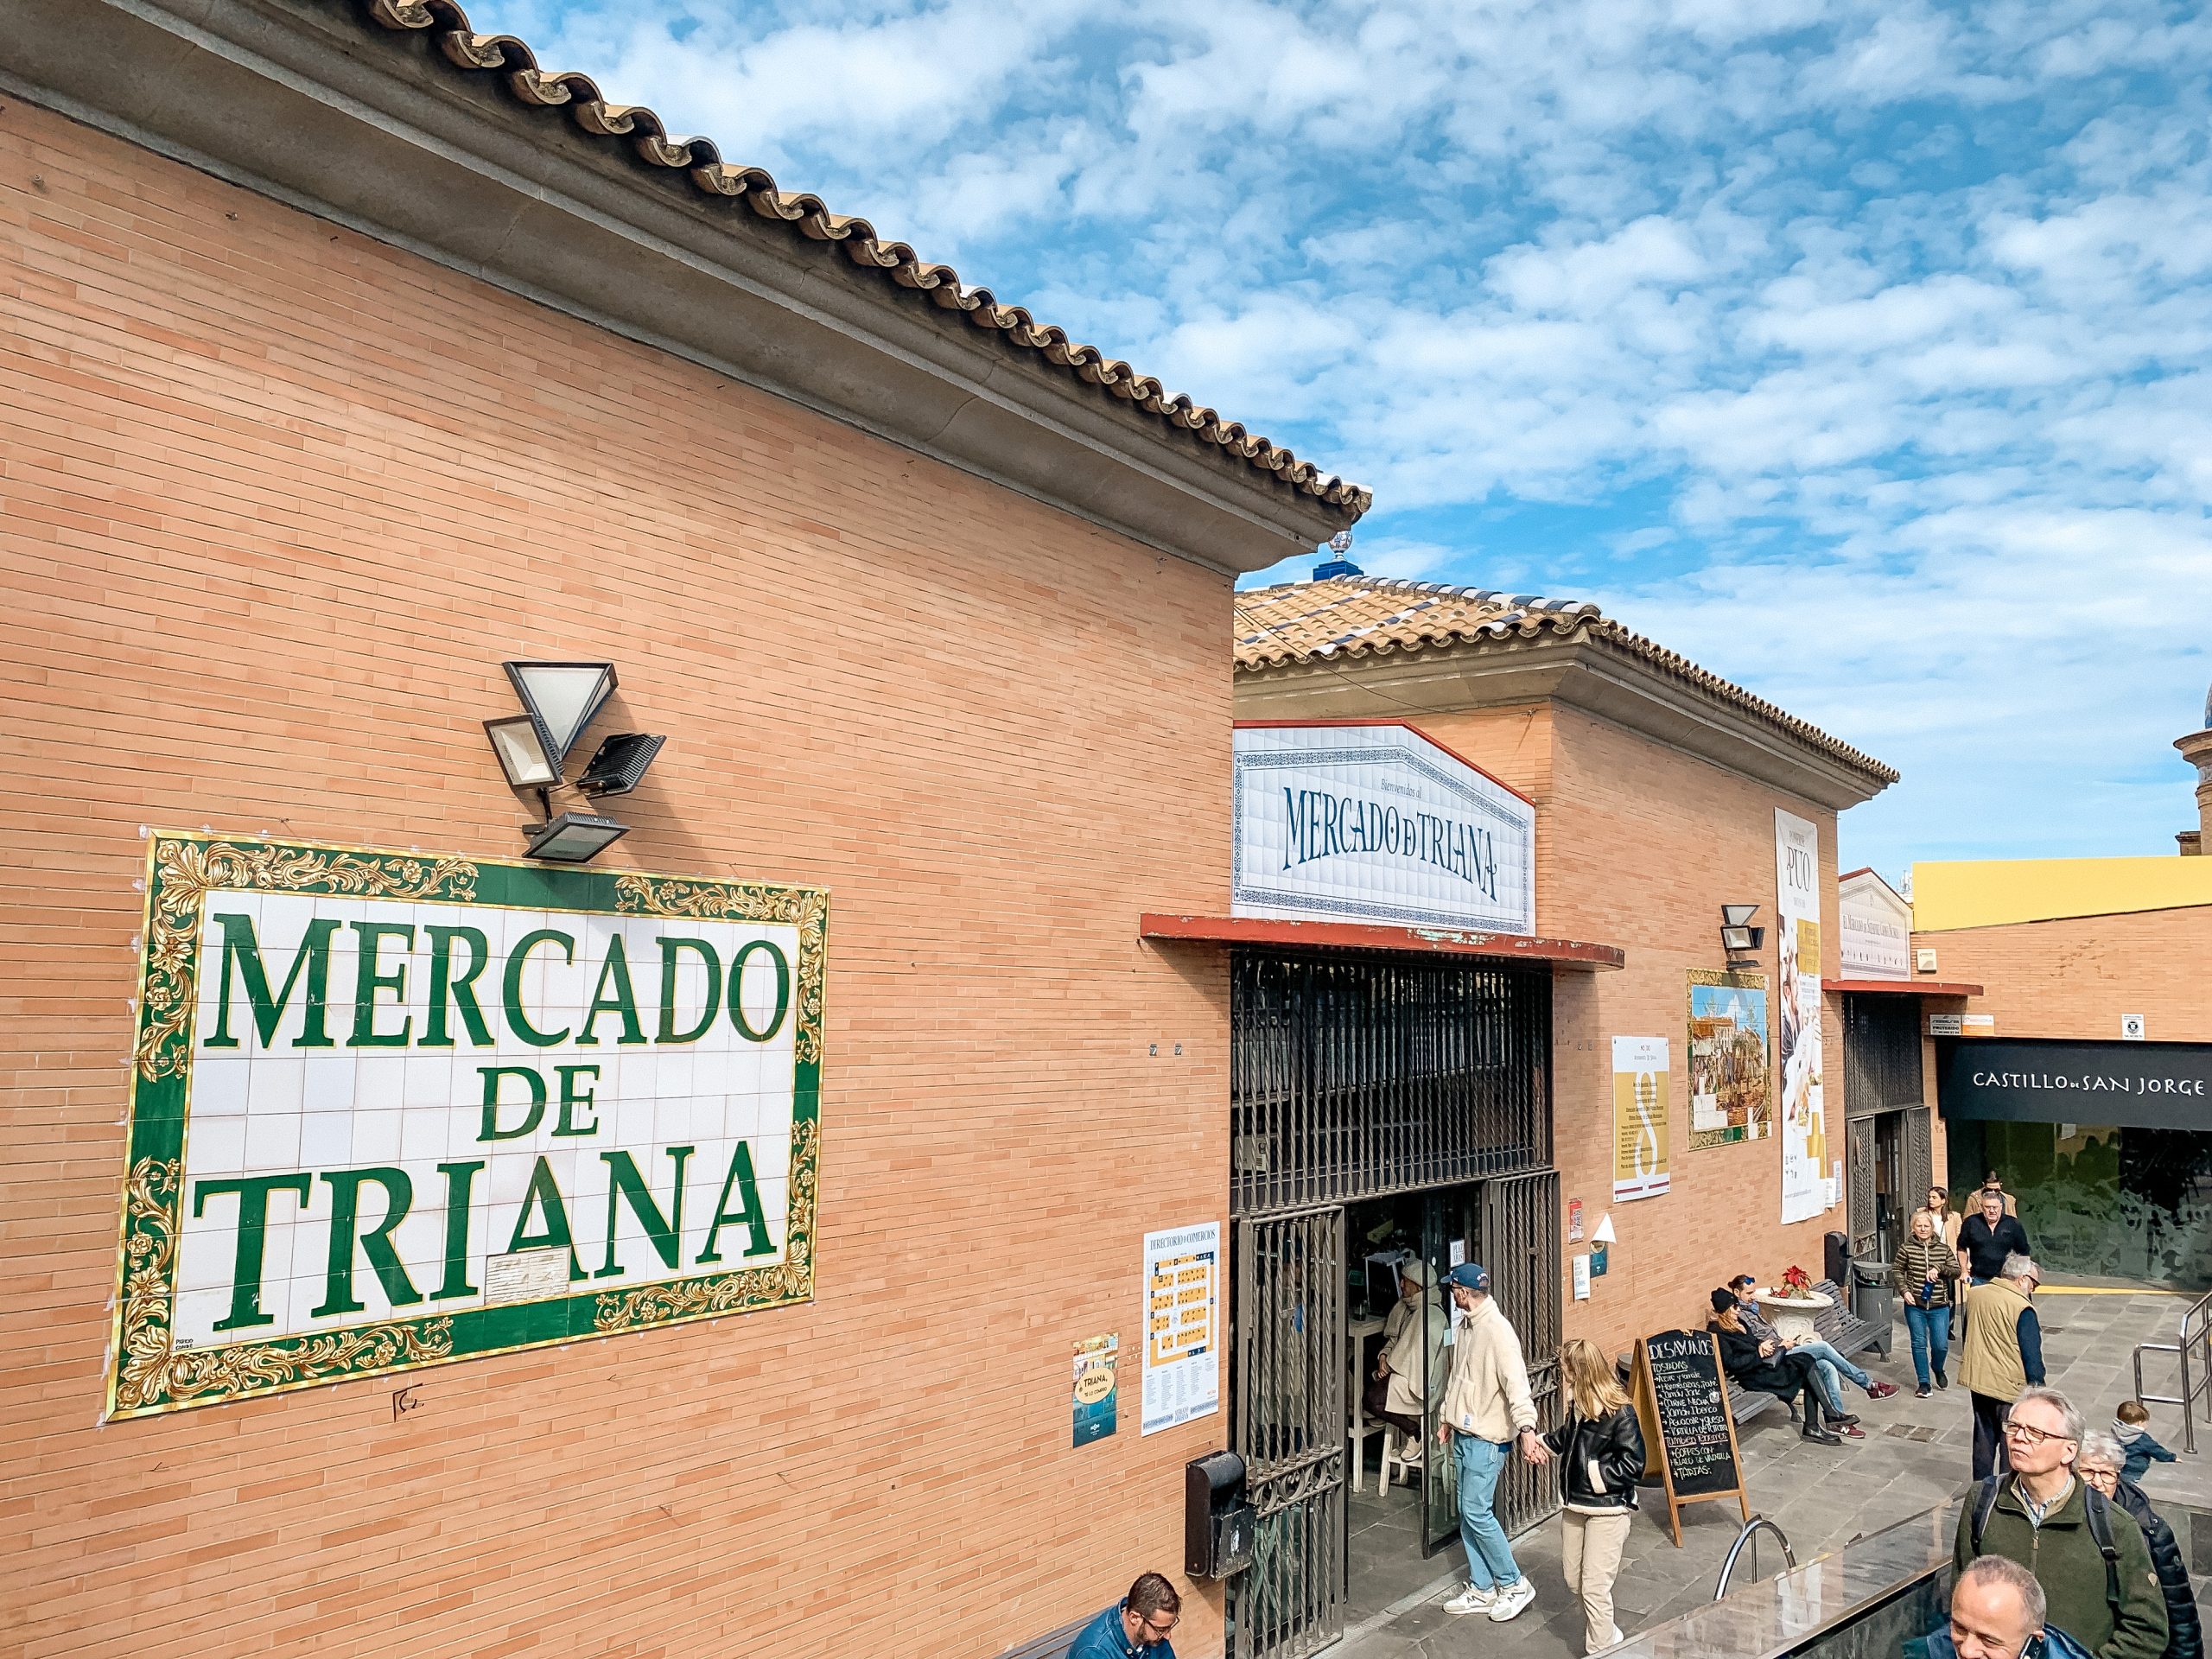 Citytrip Sevilla Mercado de Triana